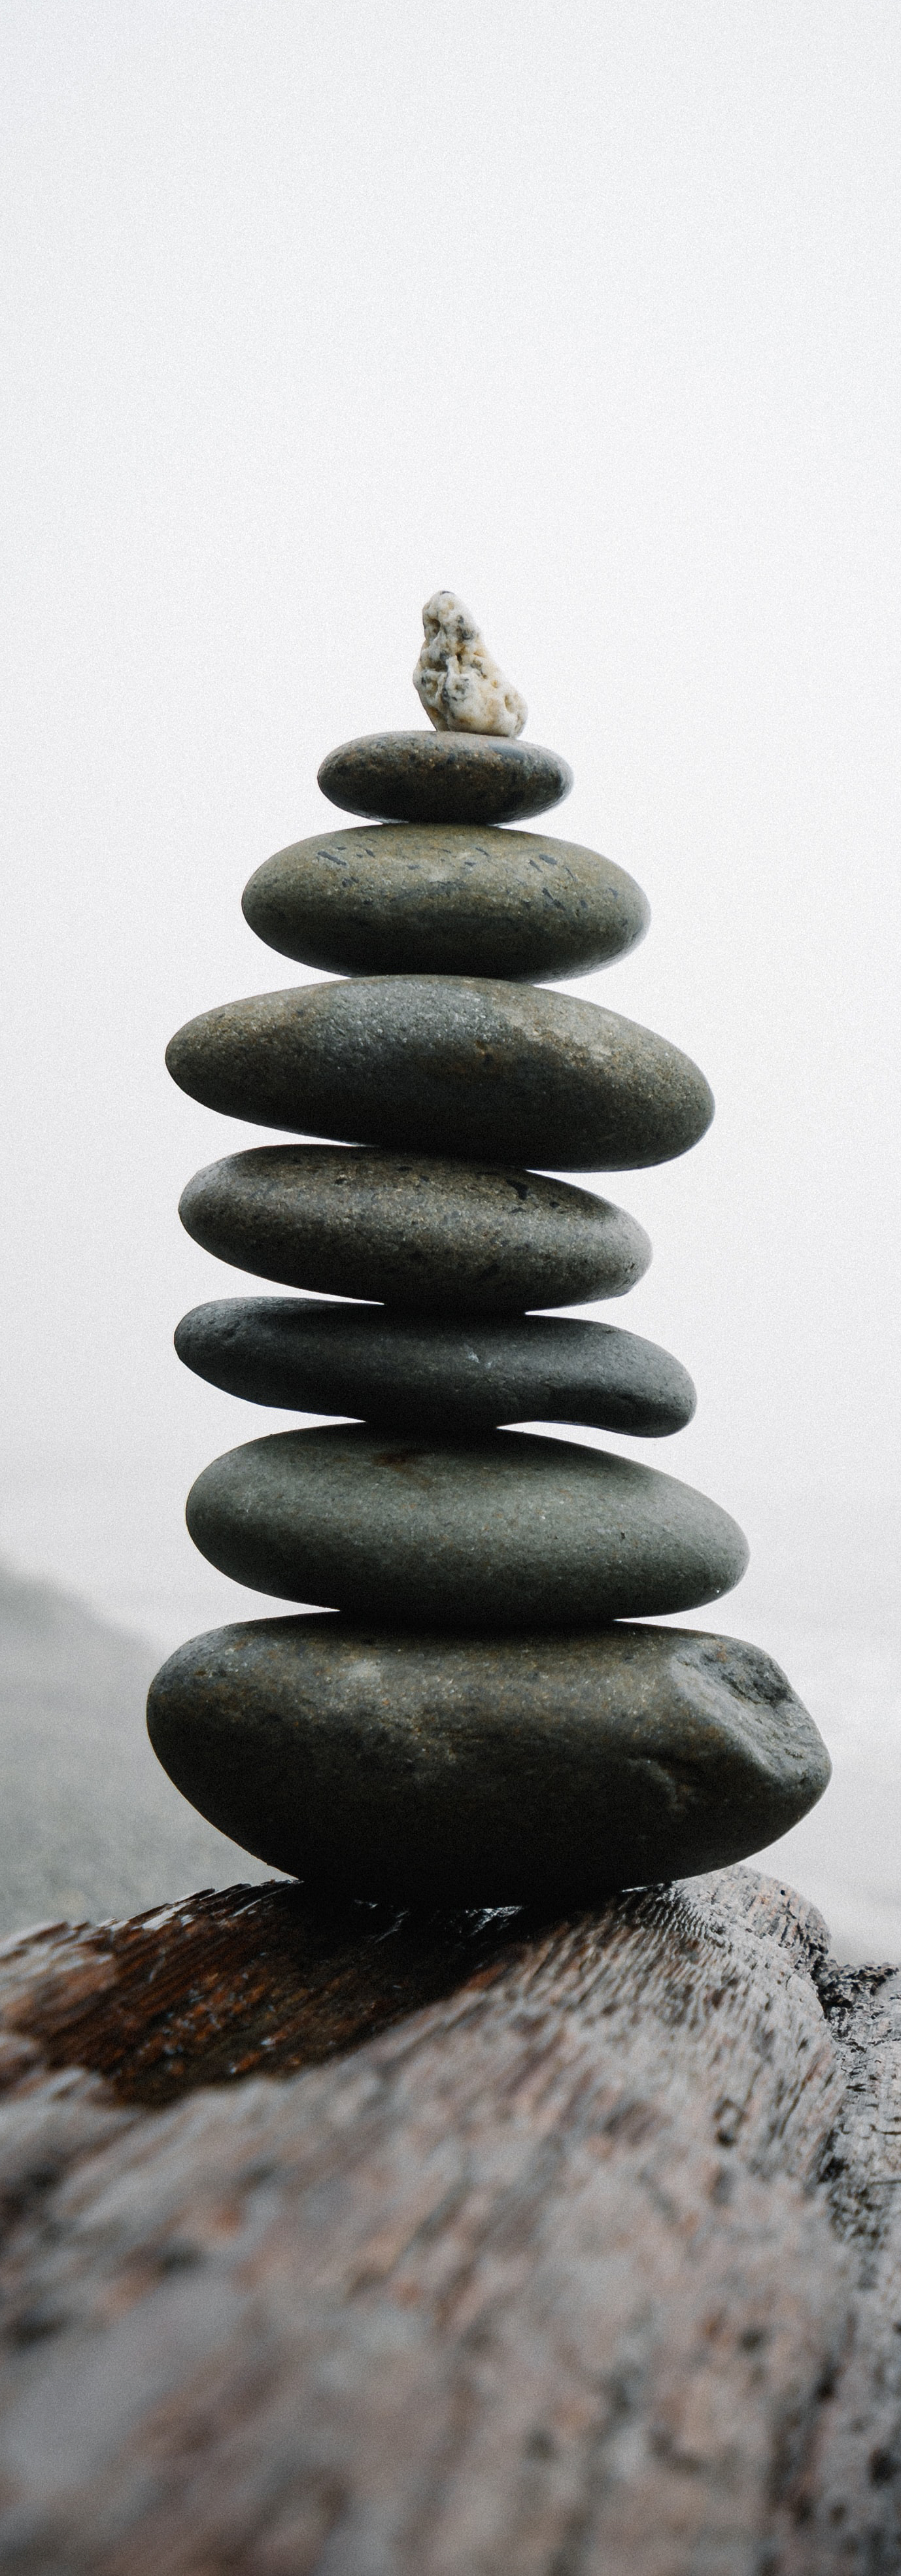 Des pierres rondes et lisses, soigneusement posées en équilibre les unes sur les autres